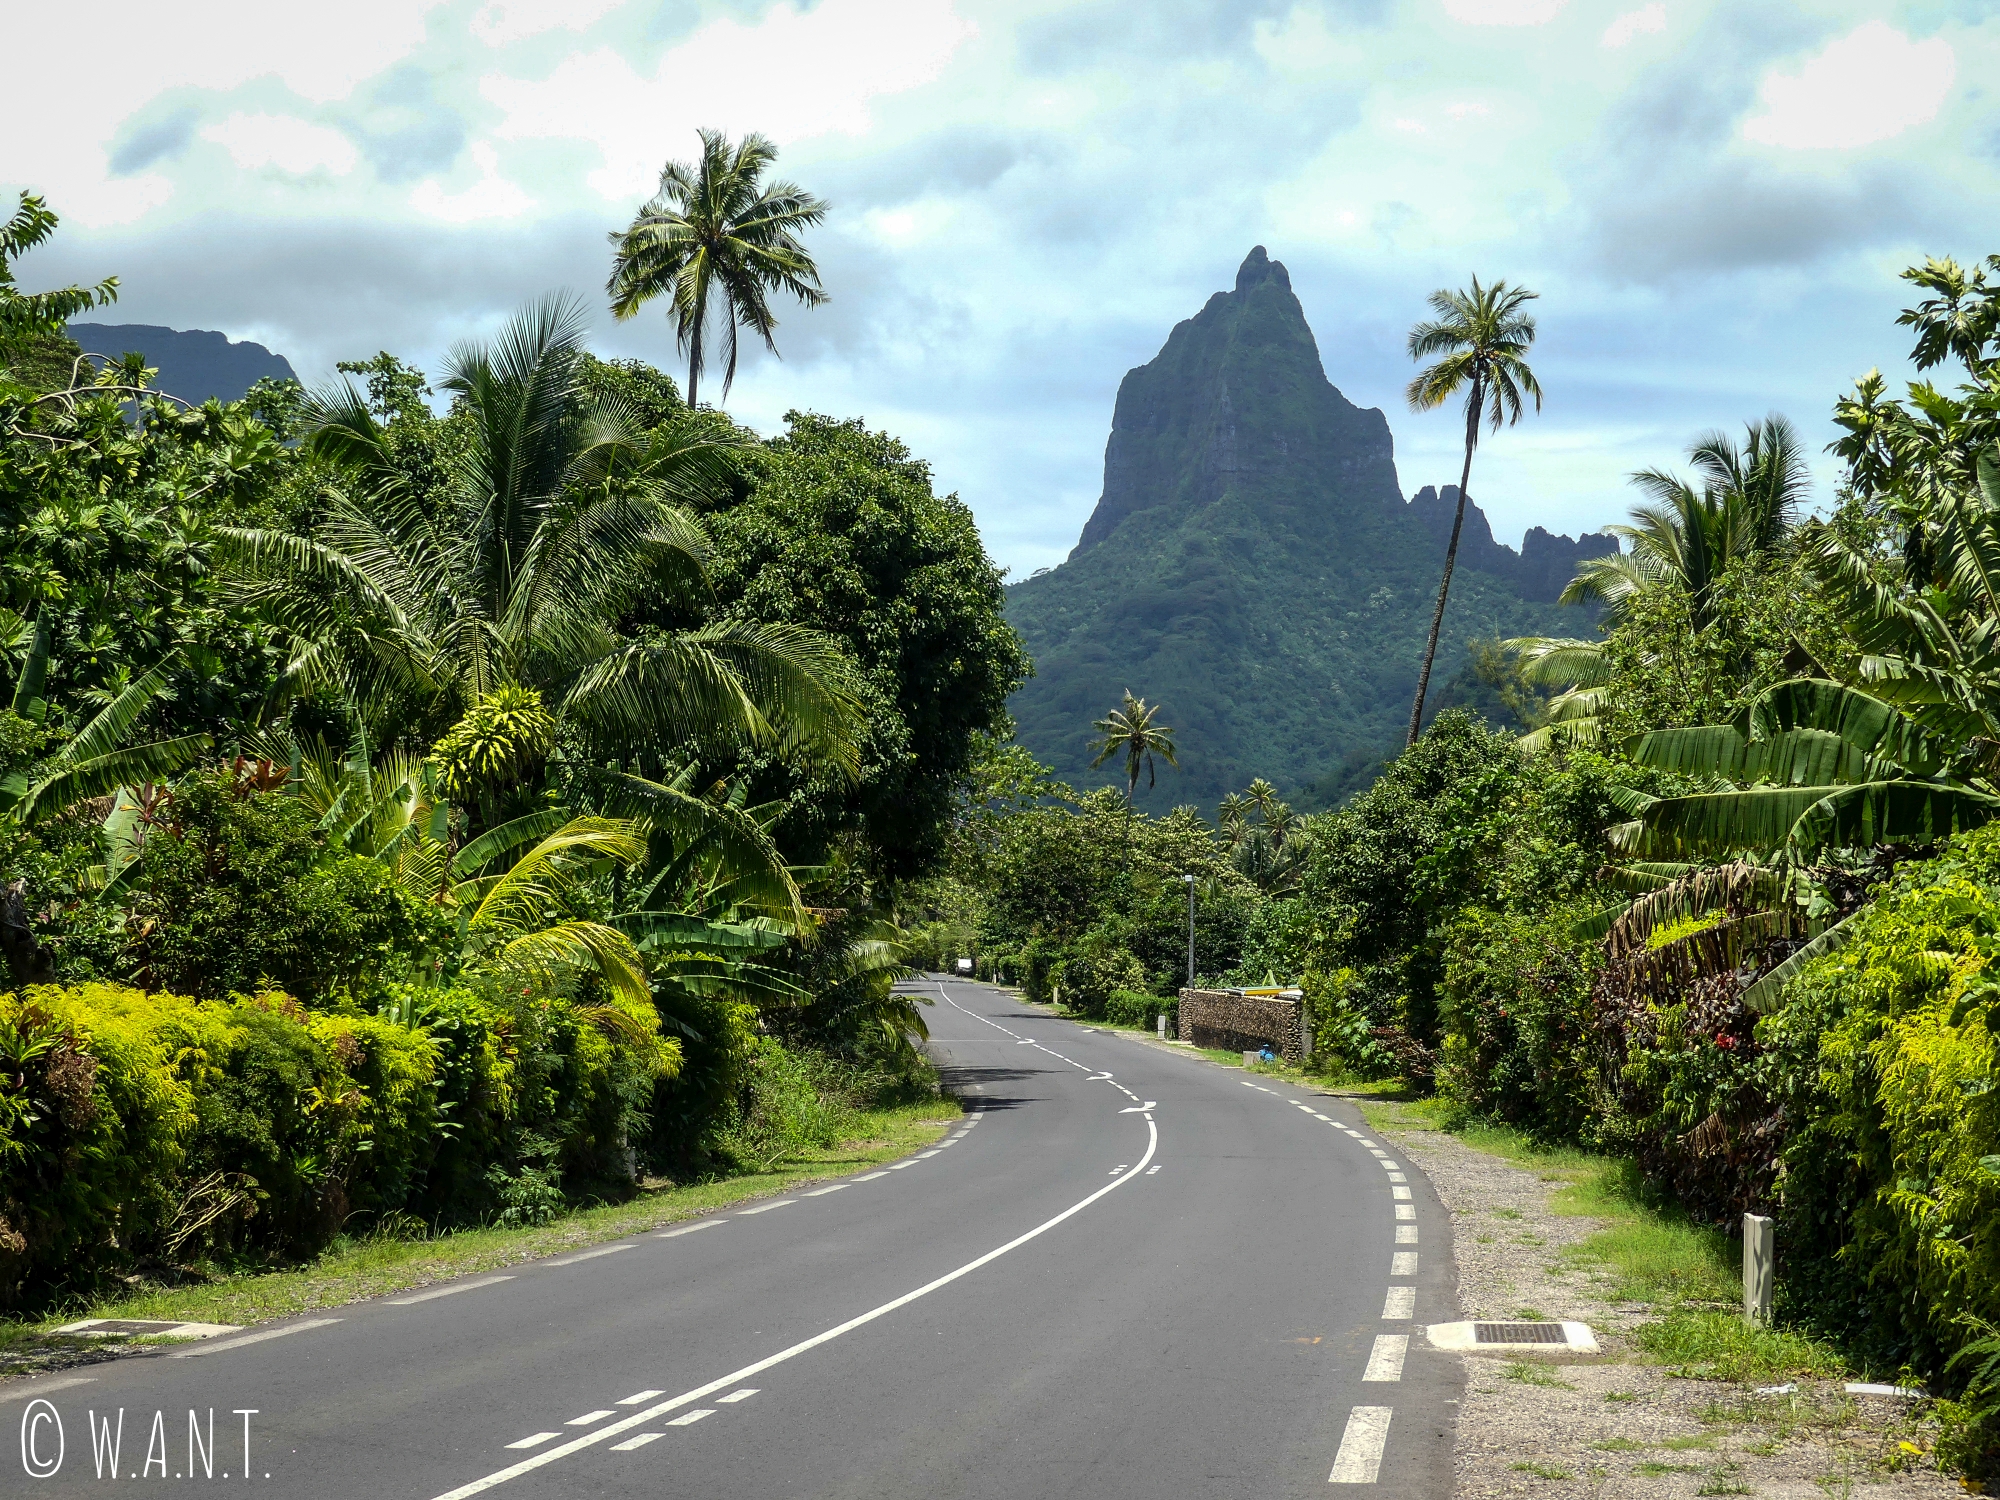 La route jouxte les pitons rocheux sur l'île de Moorea